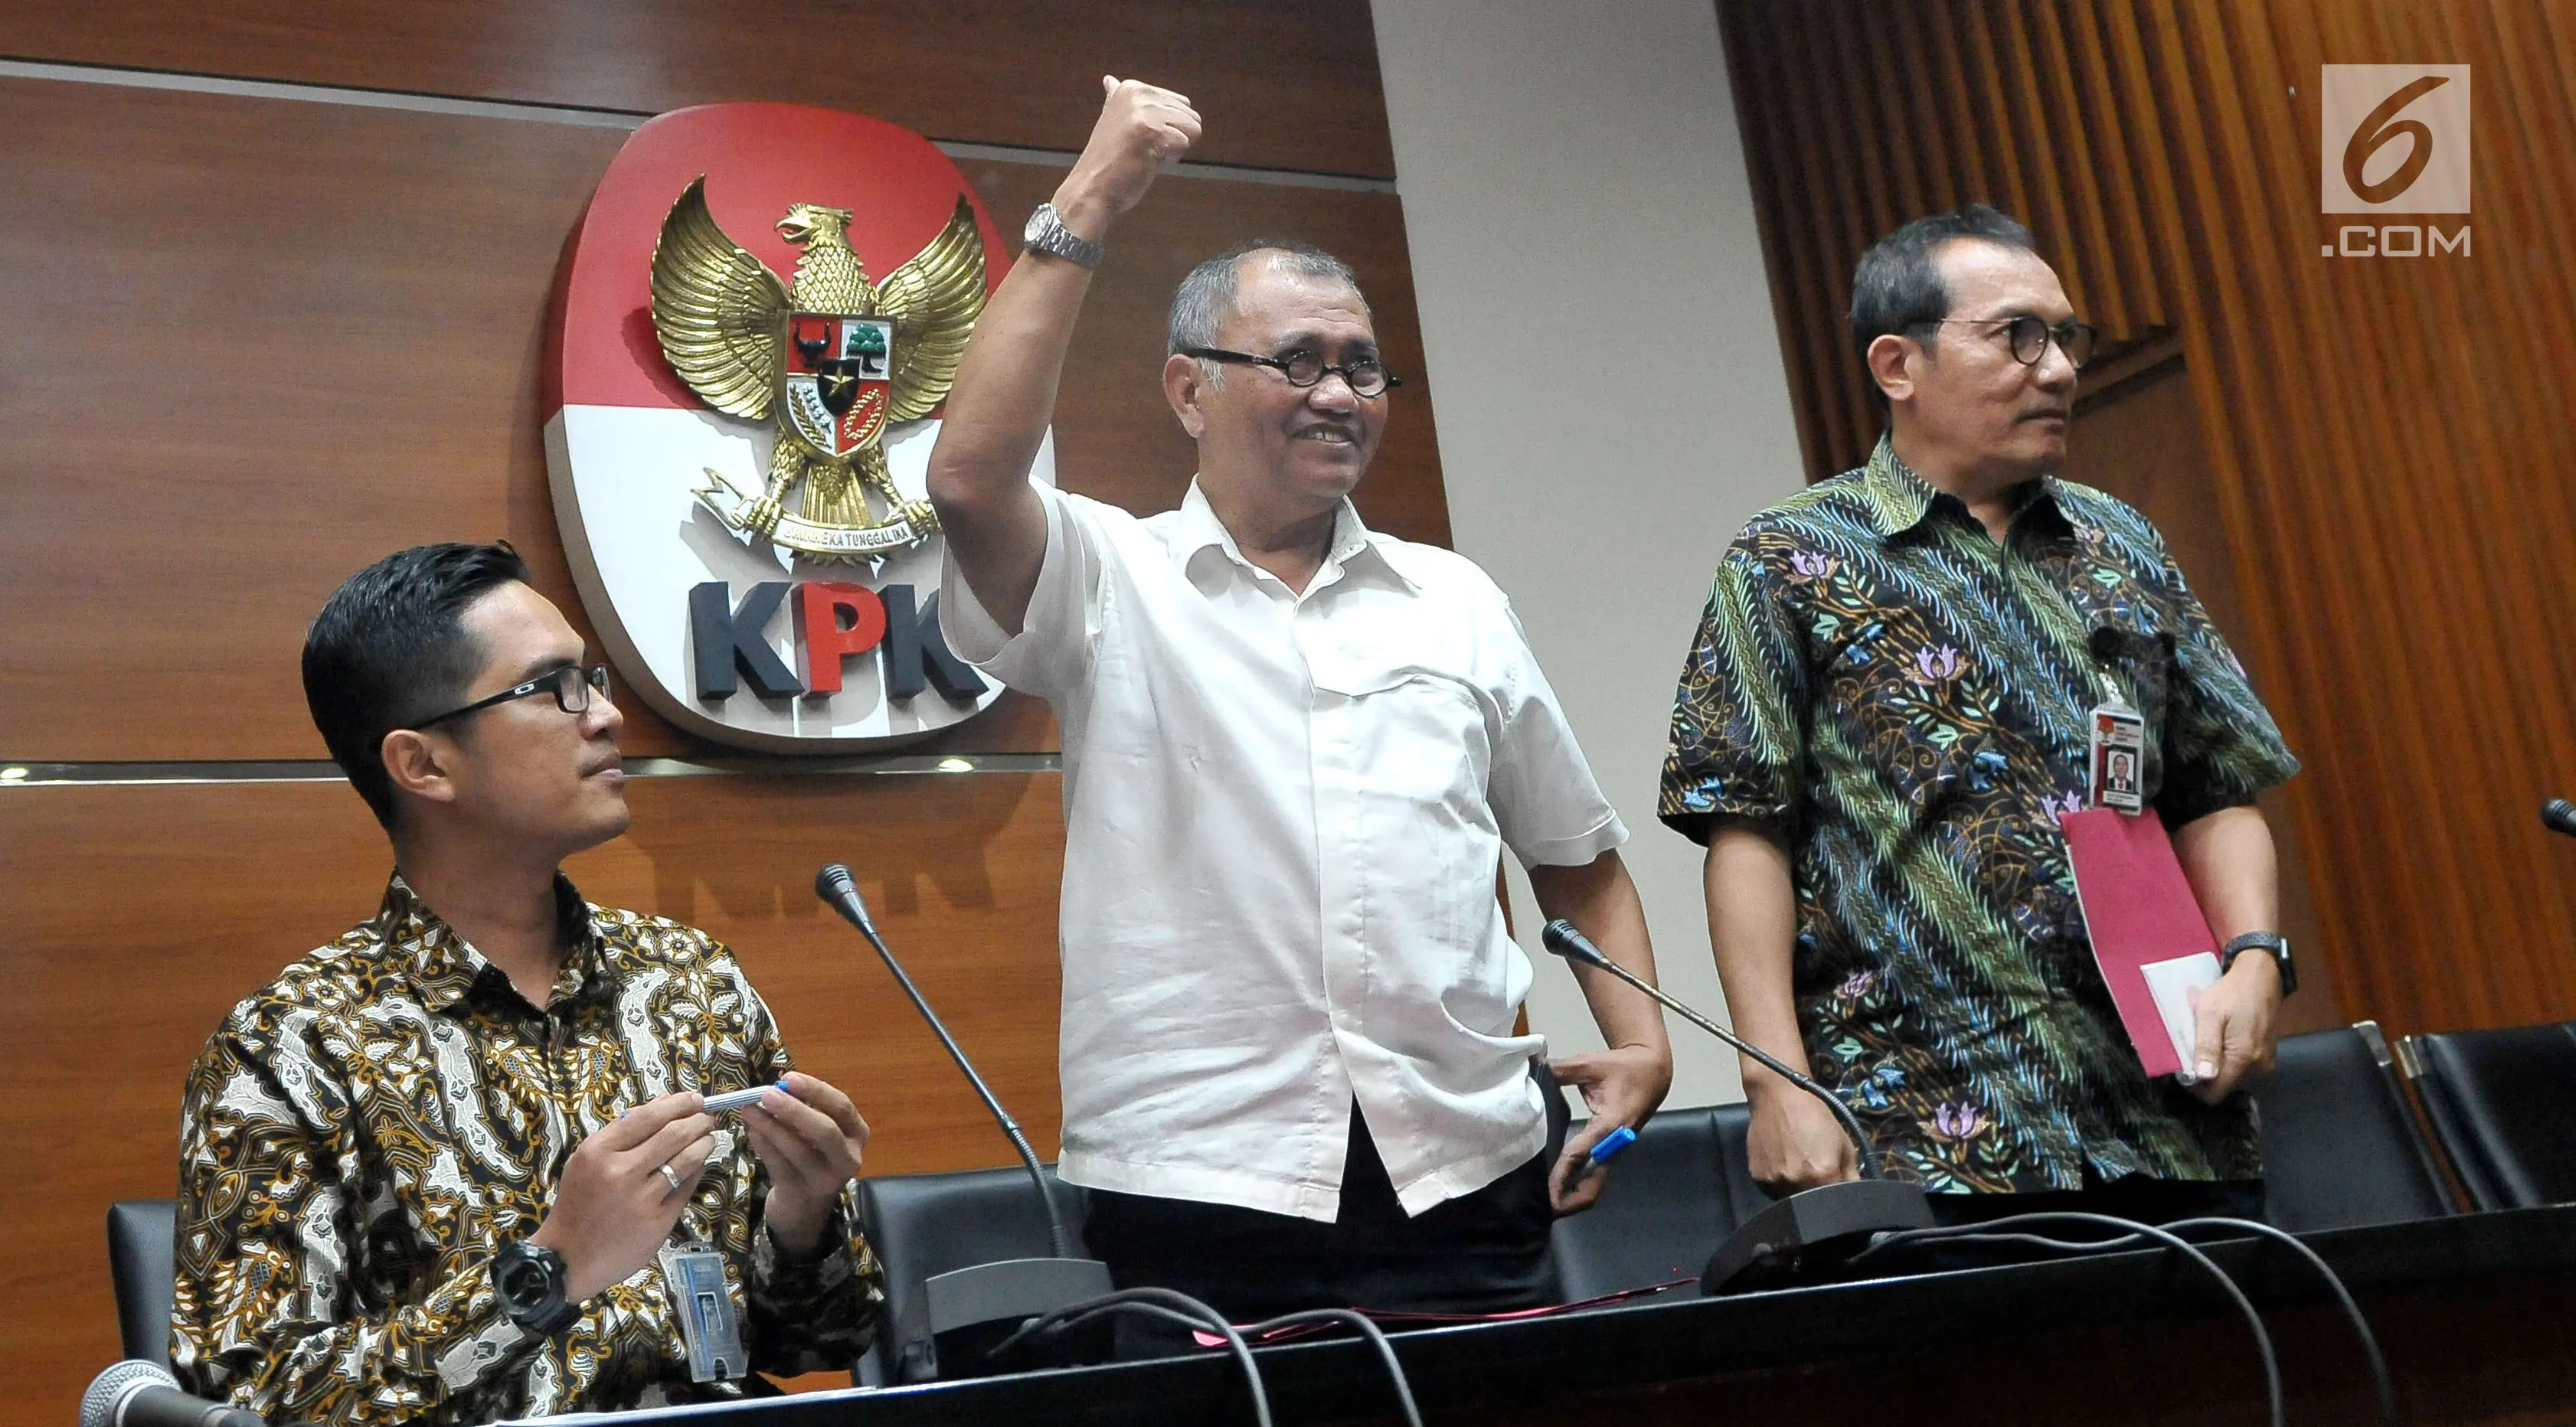 Ketua KPK Agus Rahardjo mengepalkan tangan saat memberikan keterangan pers terkait penetapan Ketua DPR RI Setya Novanto sebagai tersangka di Gedung KPK Jakarta, Senin (17/7). (Liputan6.com/Helmi Afandi)